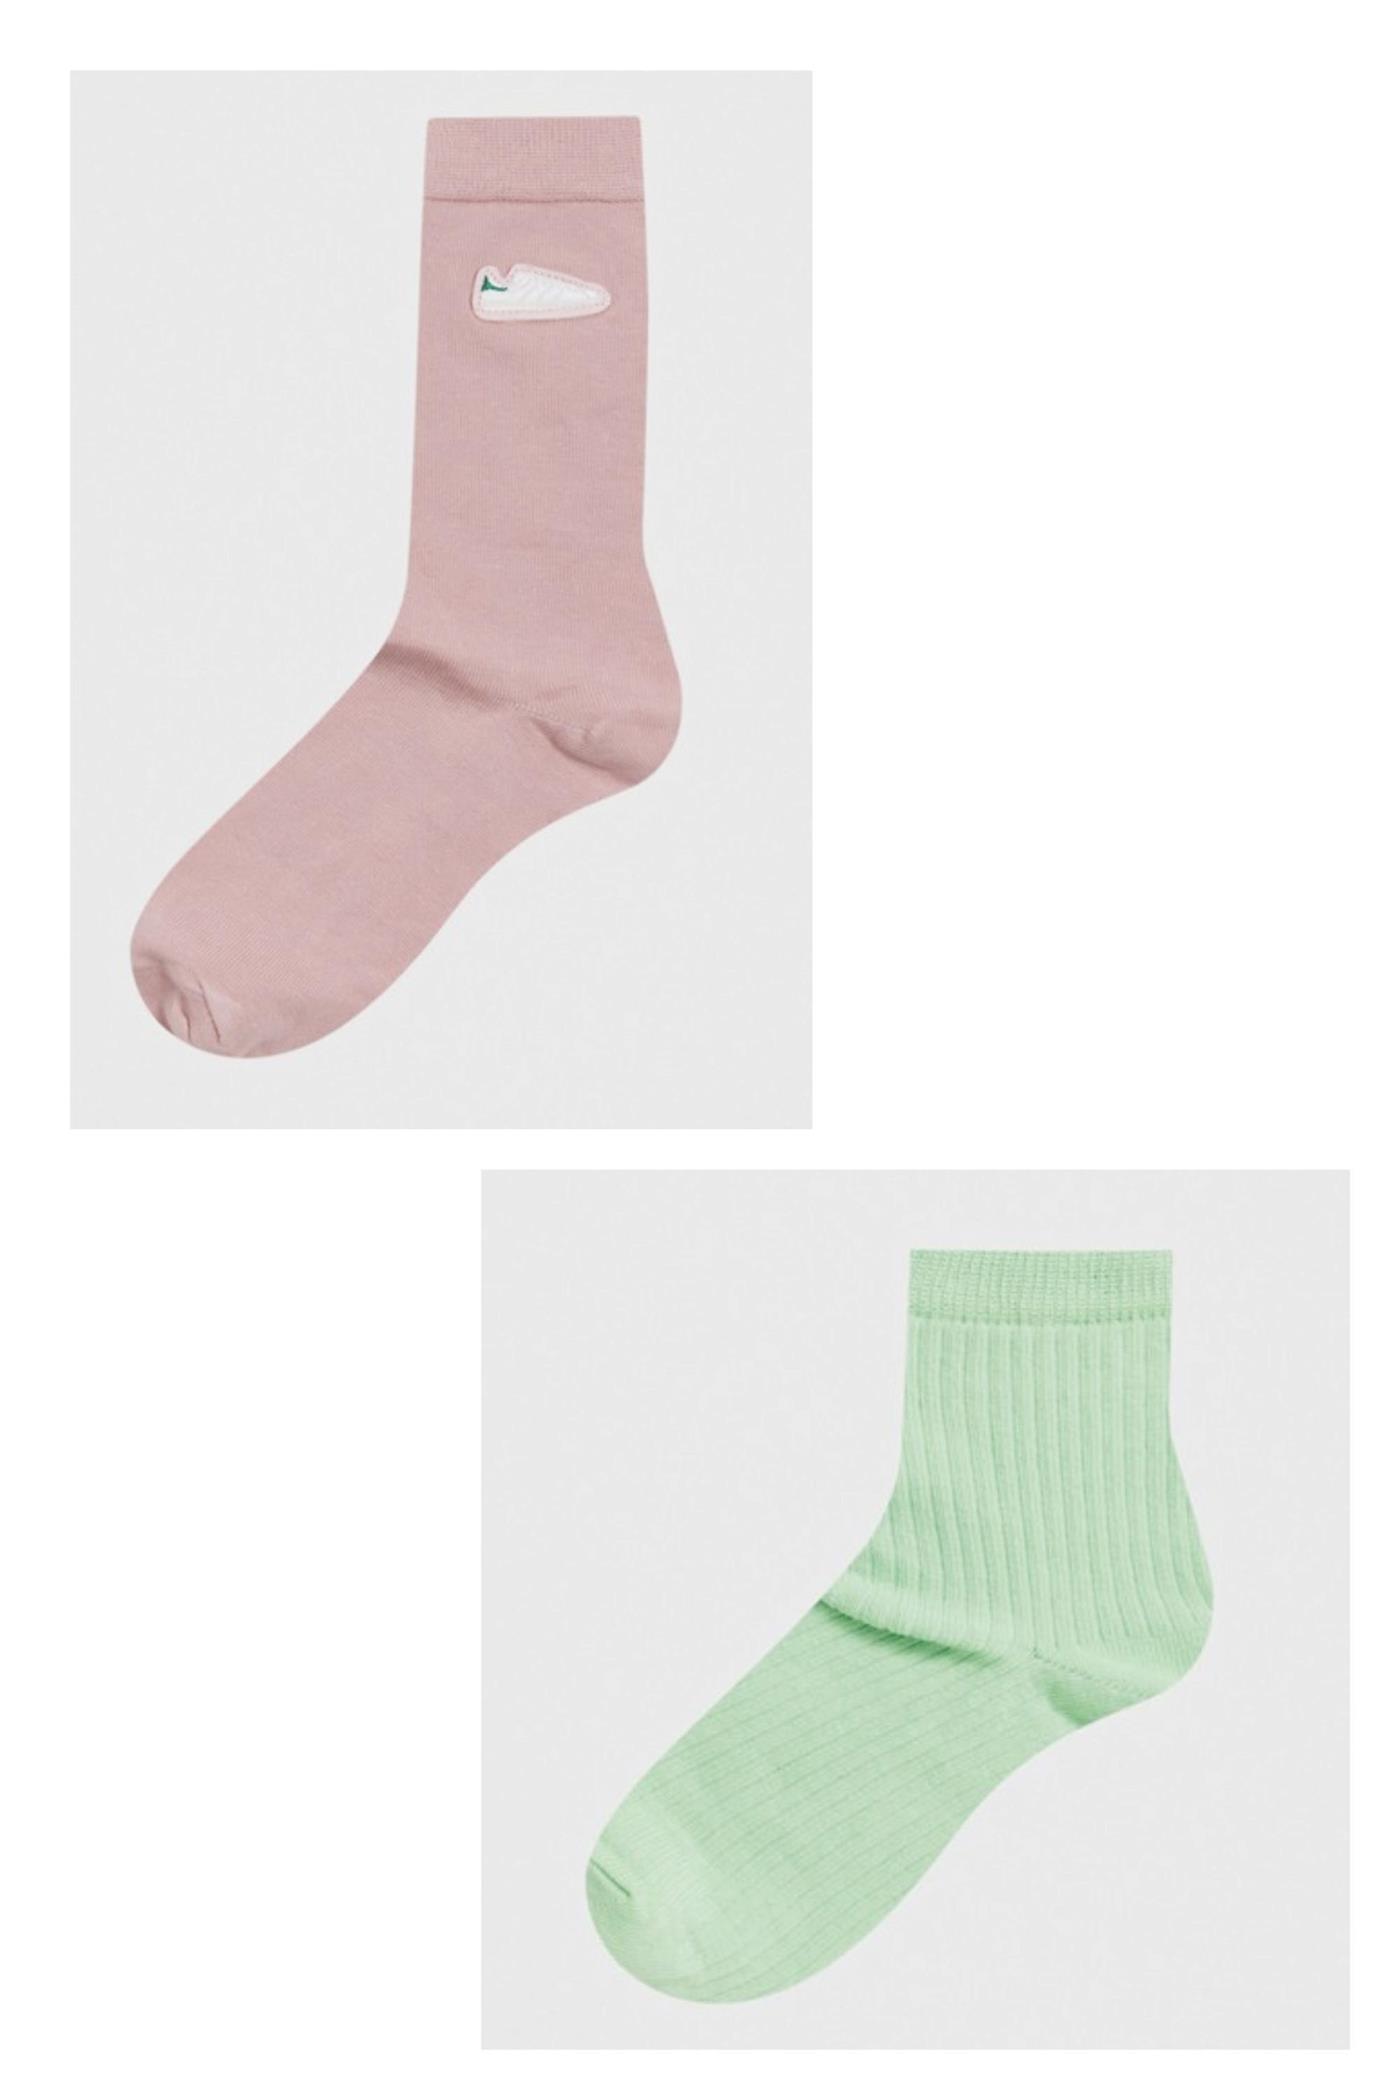 calcetines originales comprar3. calcetines originales colores pastel